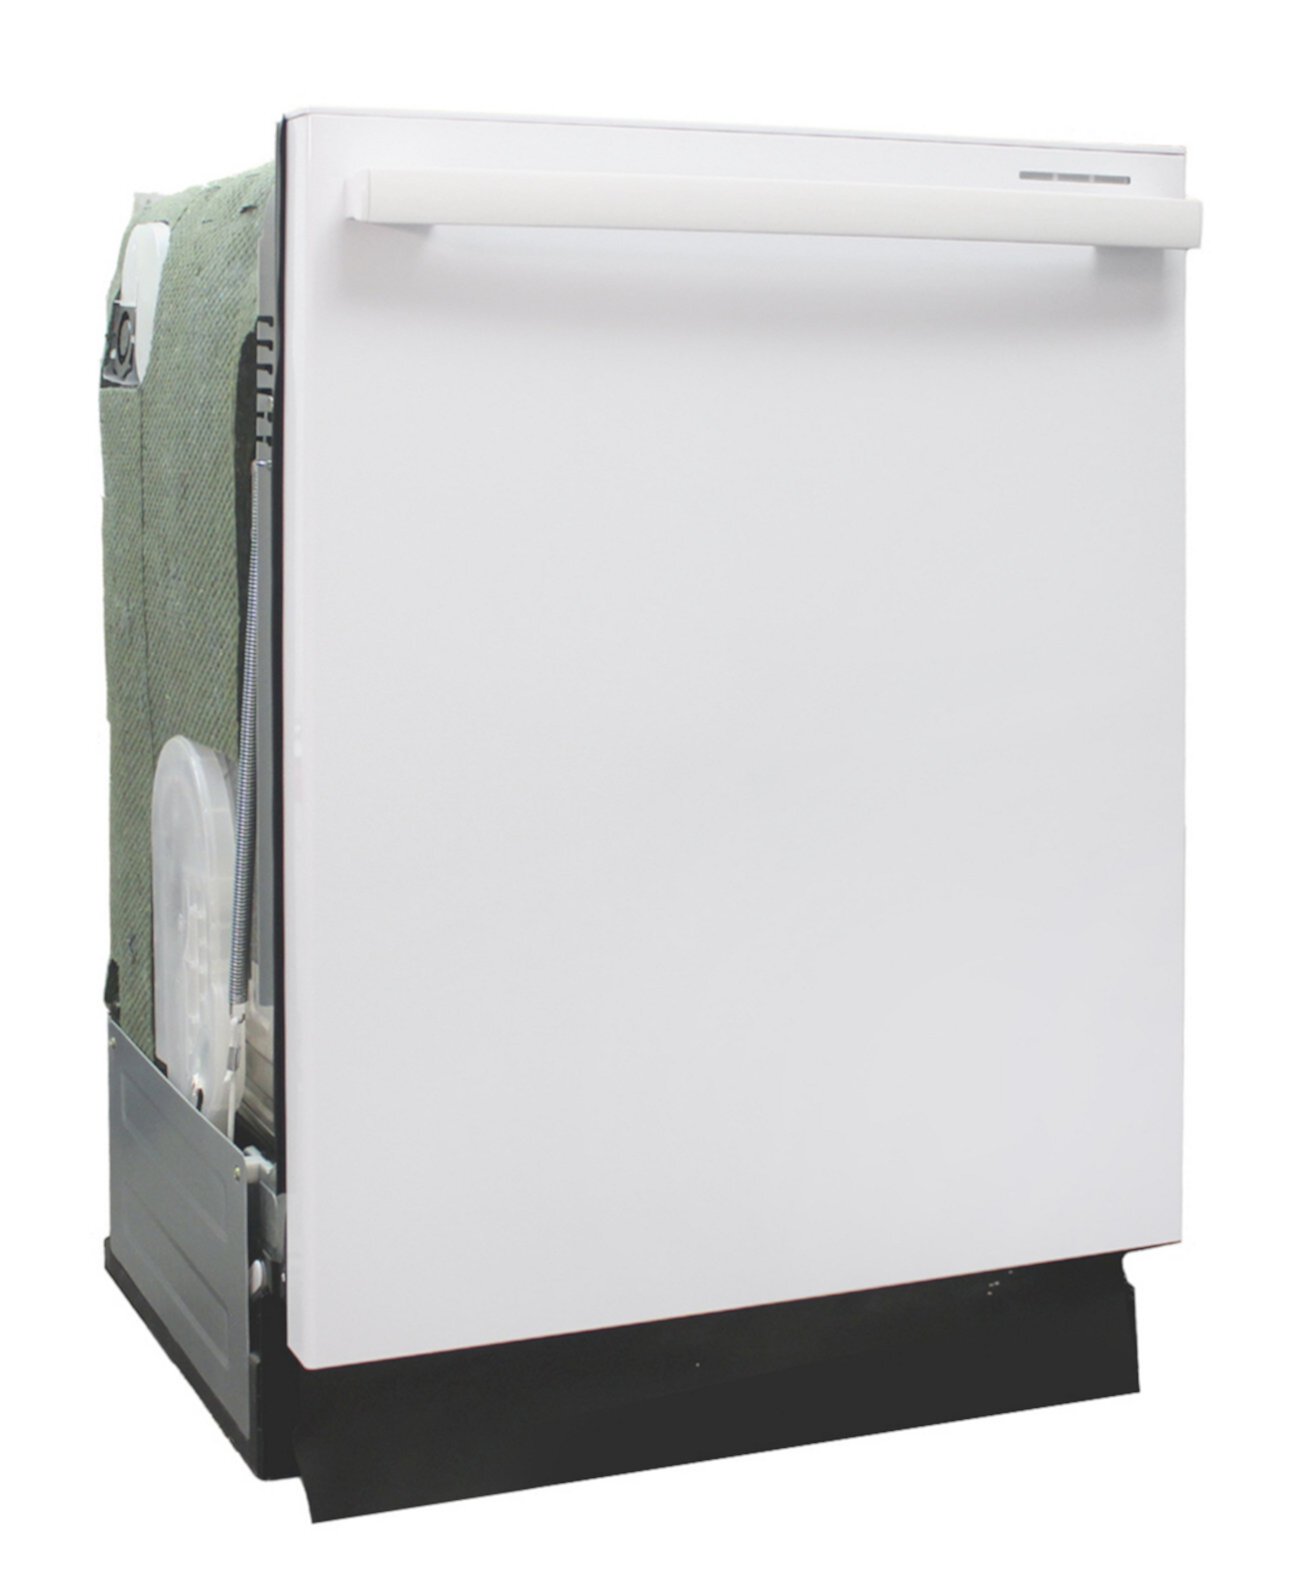 Energy Star 24-дюймовая встраиваемая посудомоечная машина с высокой ванной из нержавеющей стали с системой Smart Wash и сушкой с подогревом SPT Appliance Inc.